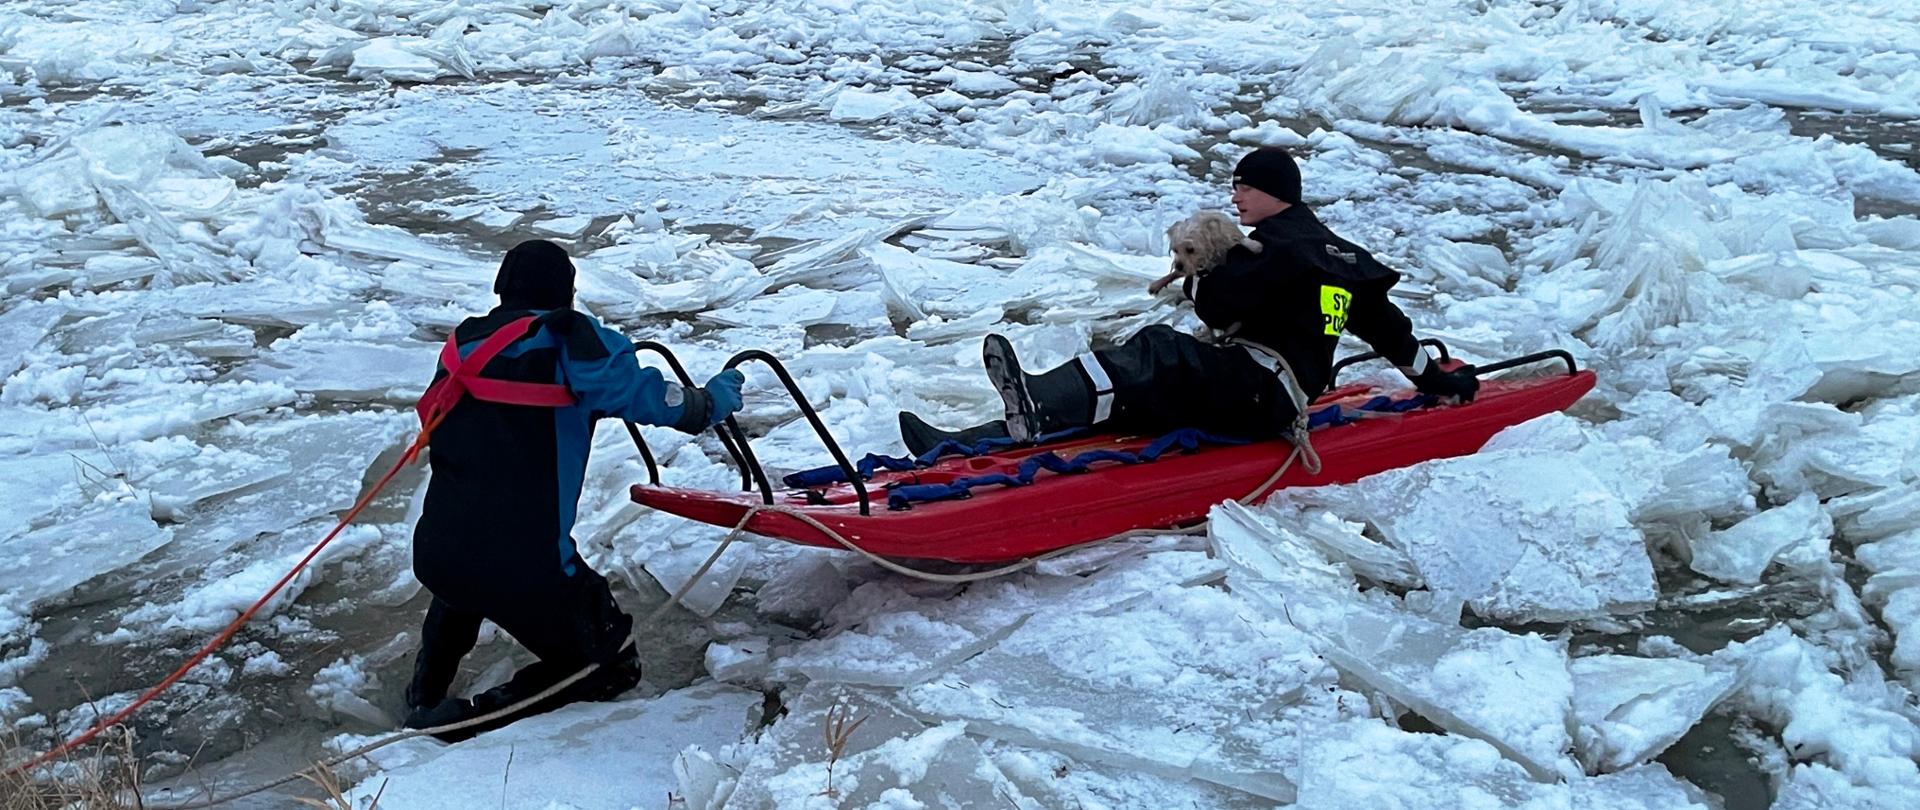 Popękana kra na rzece, strażak na saniach lodowych trzymający psa, drugi strażak asekuruje sanie, po lewej brzeg.